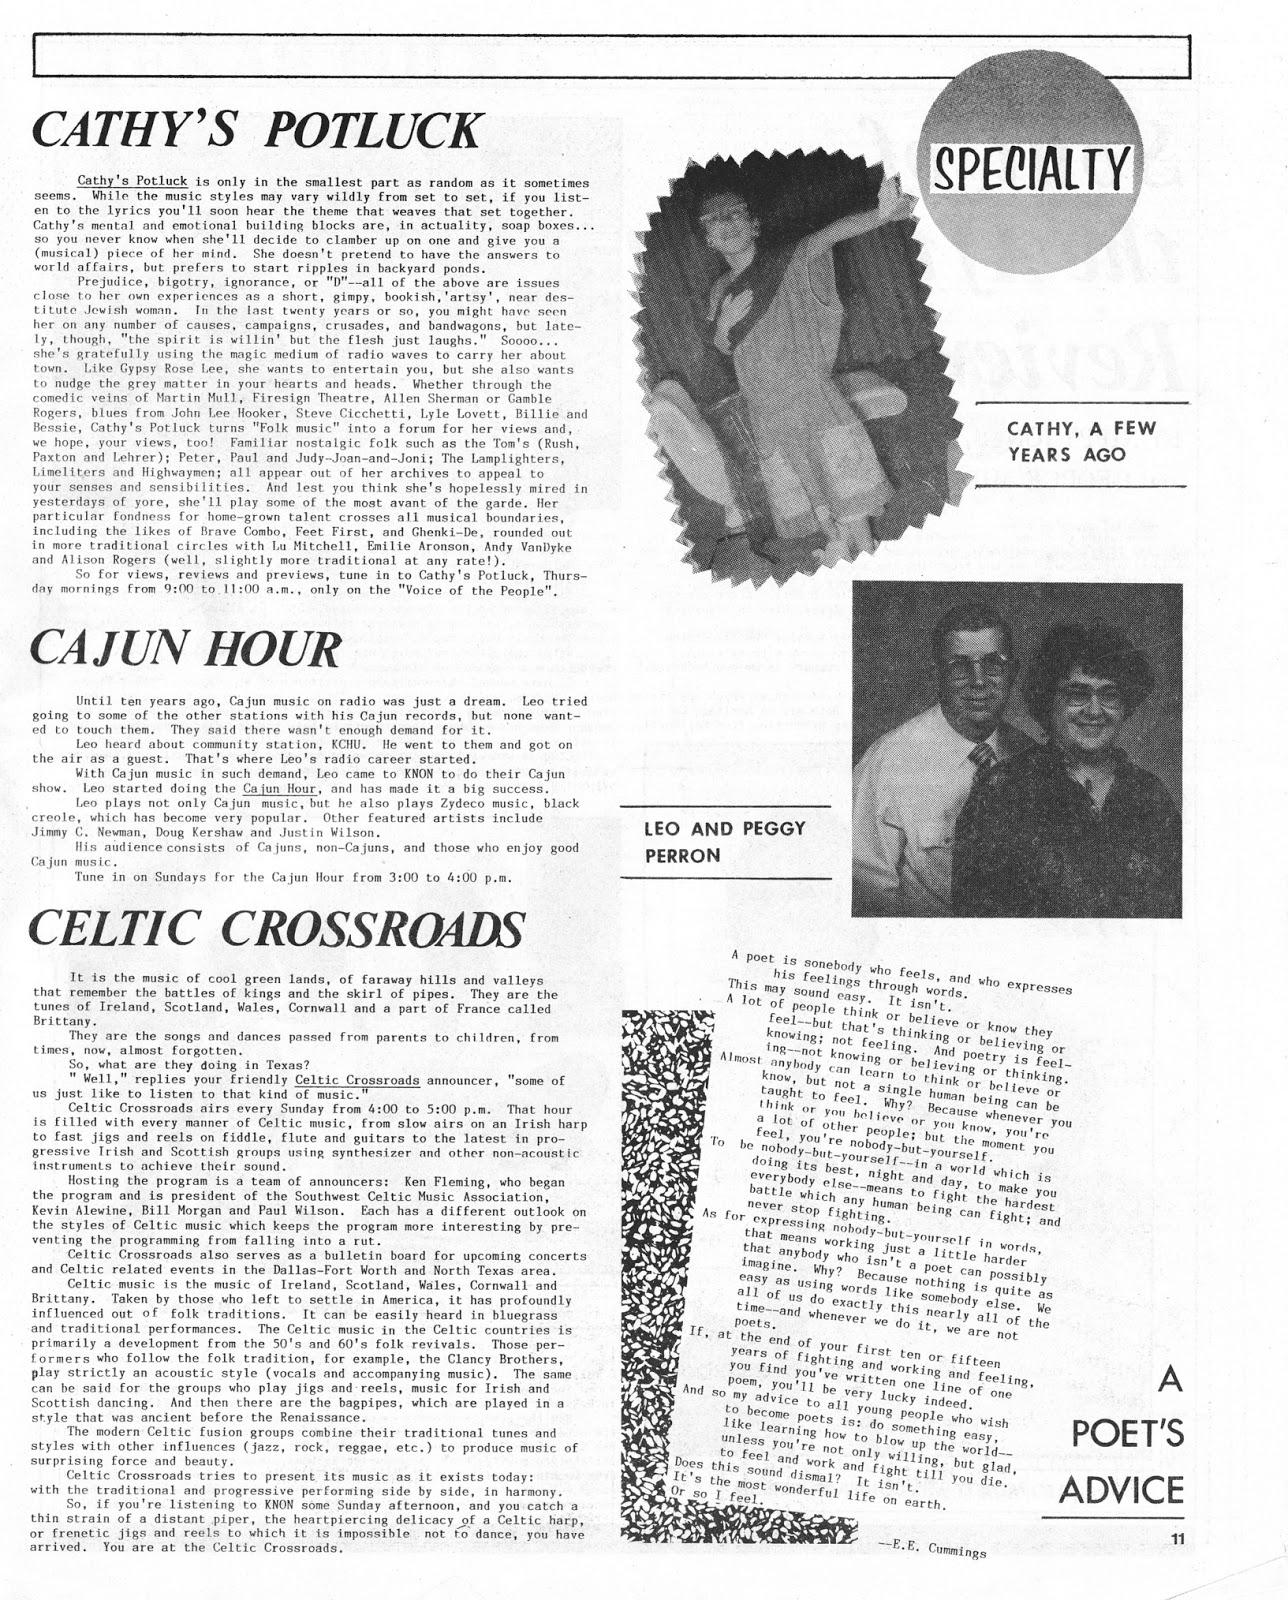 scrapbook-1986-issue-4-p11